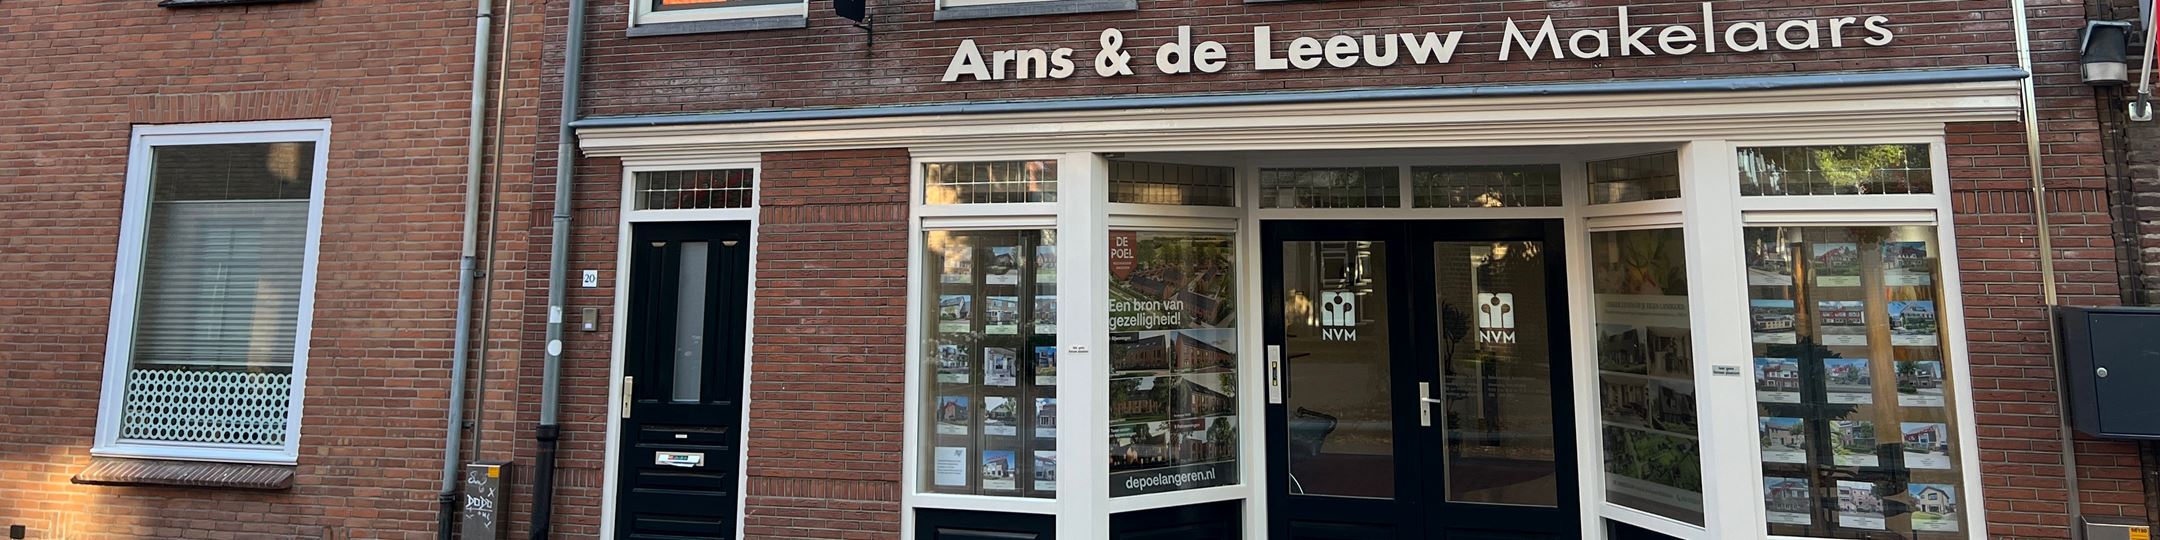 Foto Arns & De Leeuw Makelaars